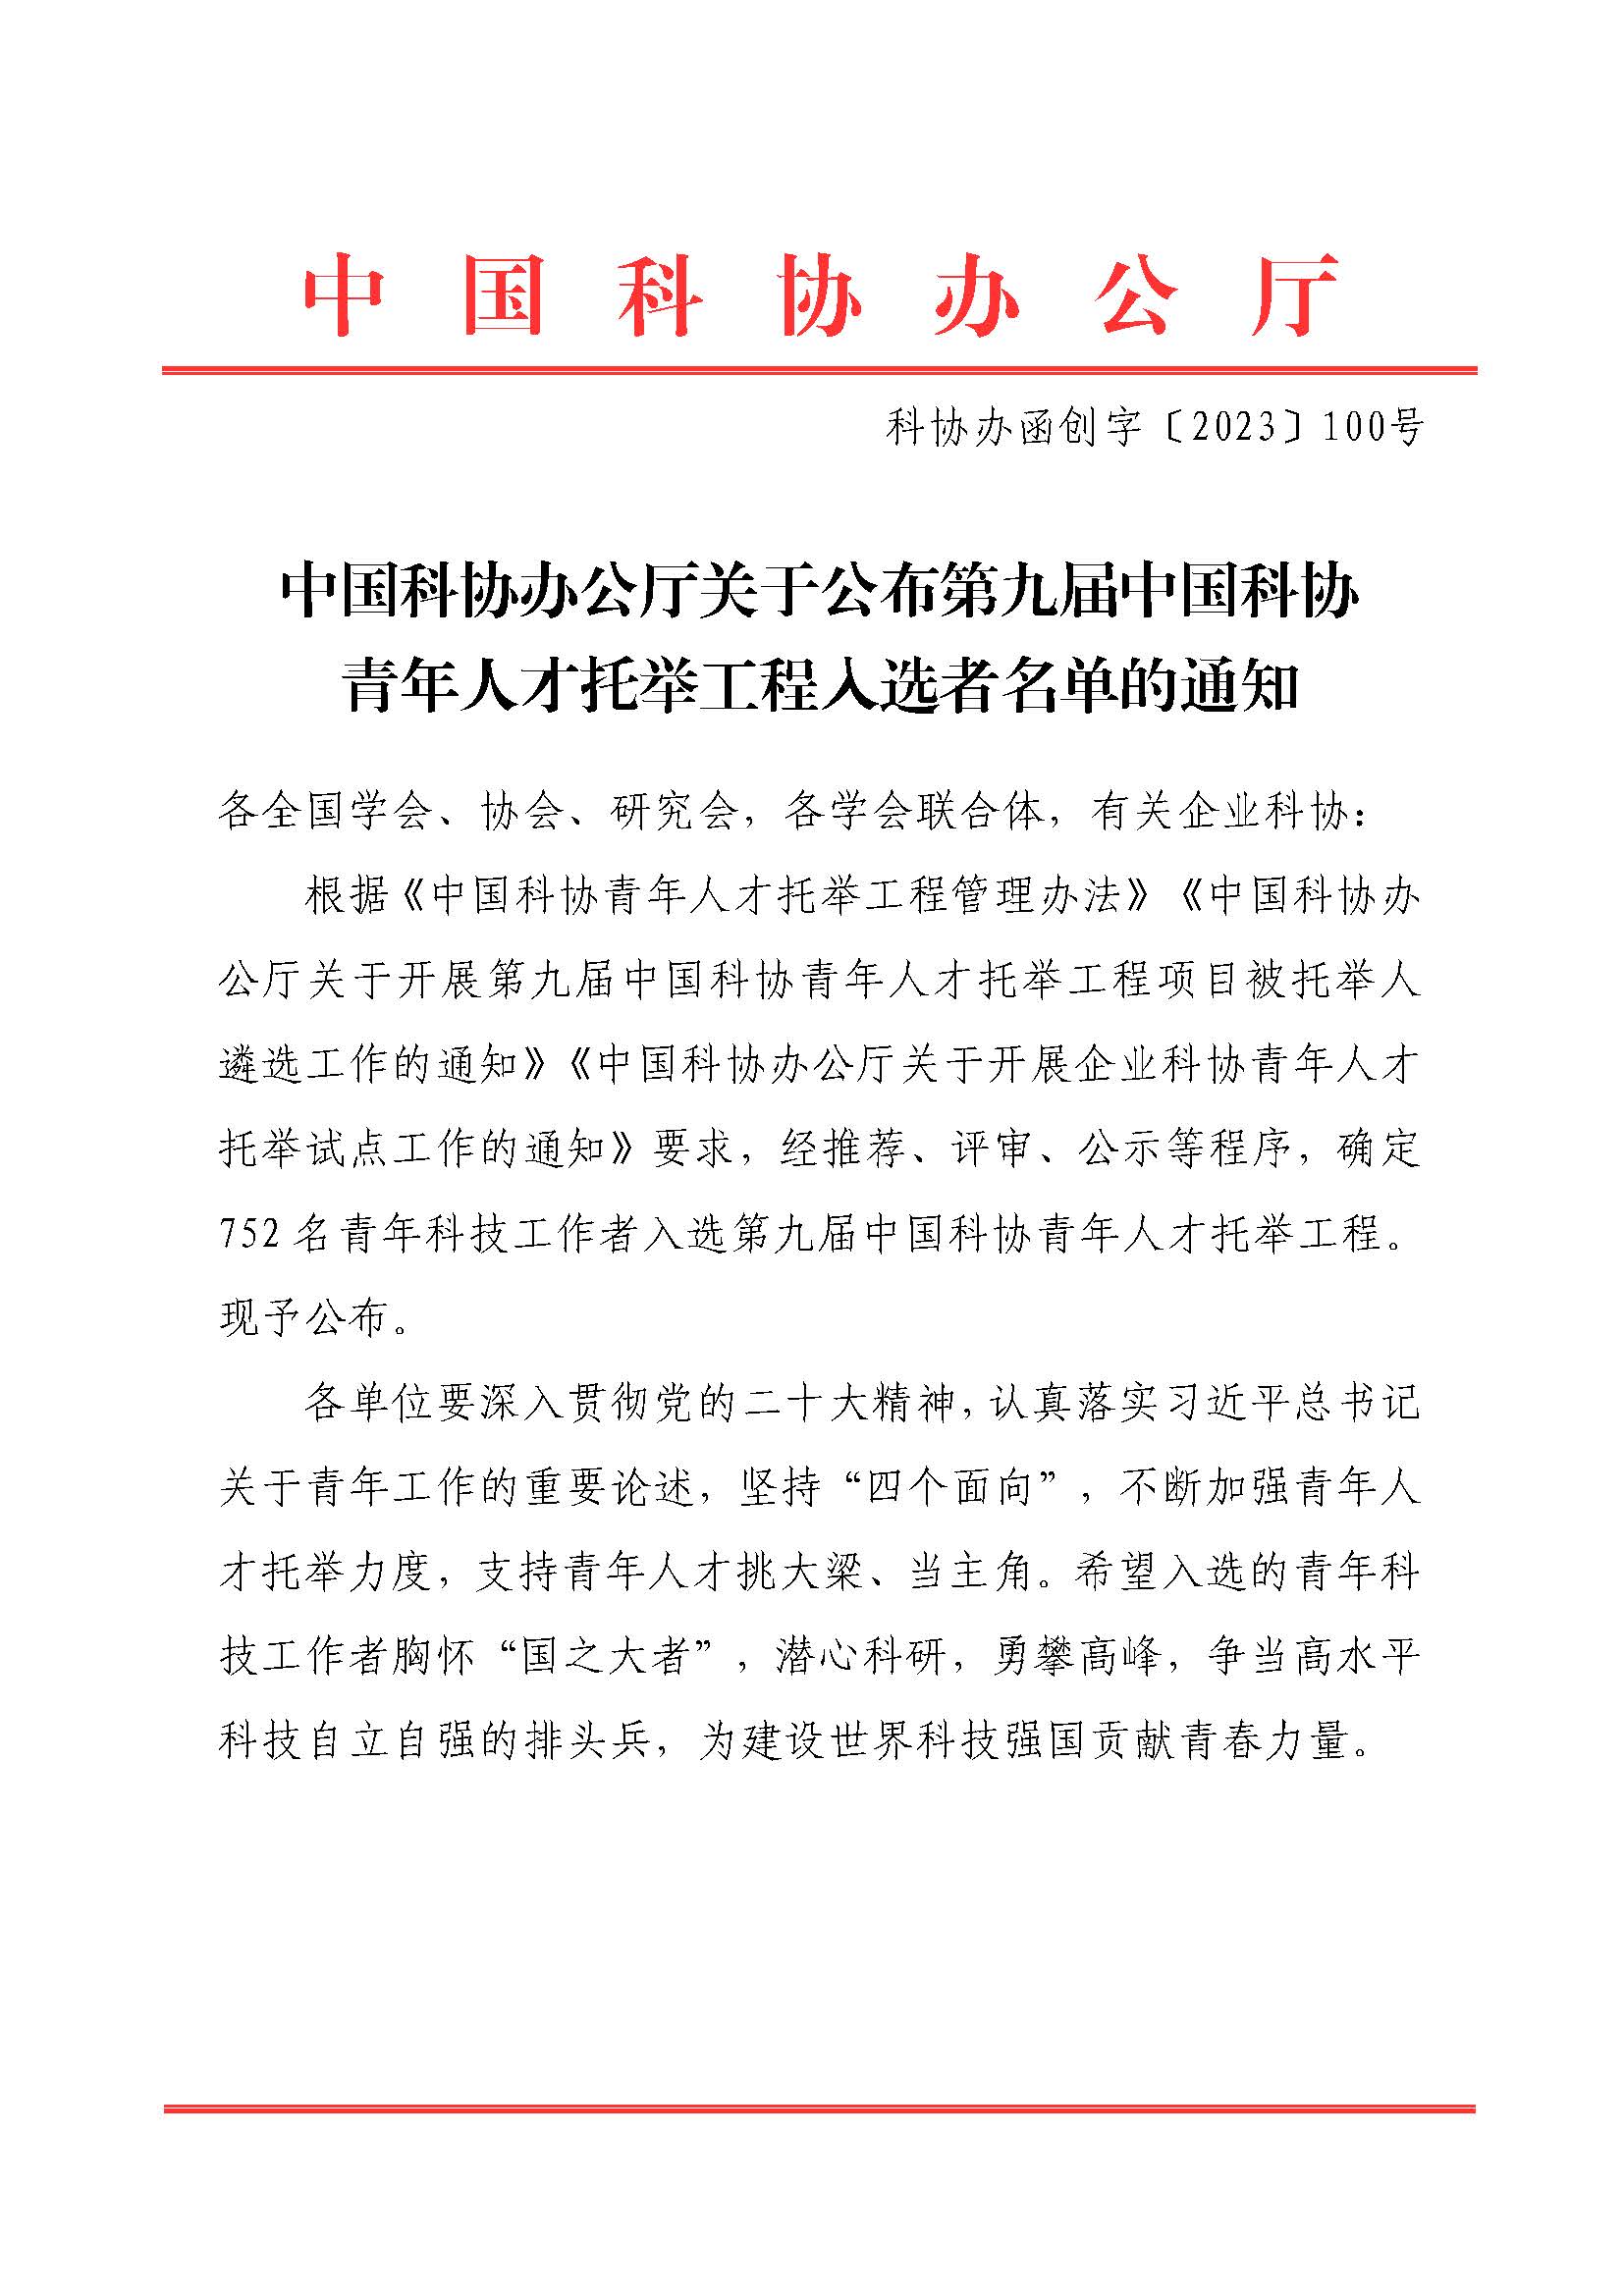 中国科协办公厅关于公布第九届中国科协青年人才托举工程入选者名单的通知（科协办函创字〔2023〕100号）(1)_页面_01.jpg